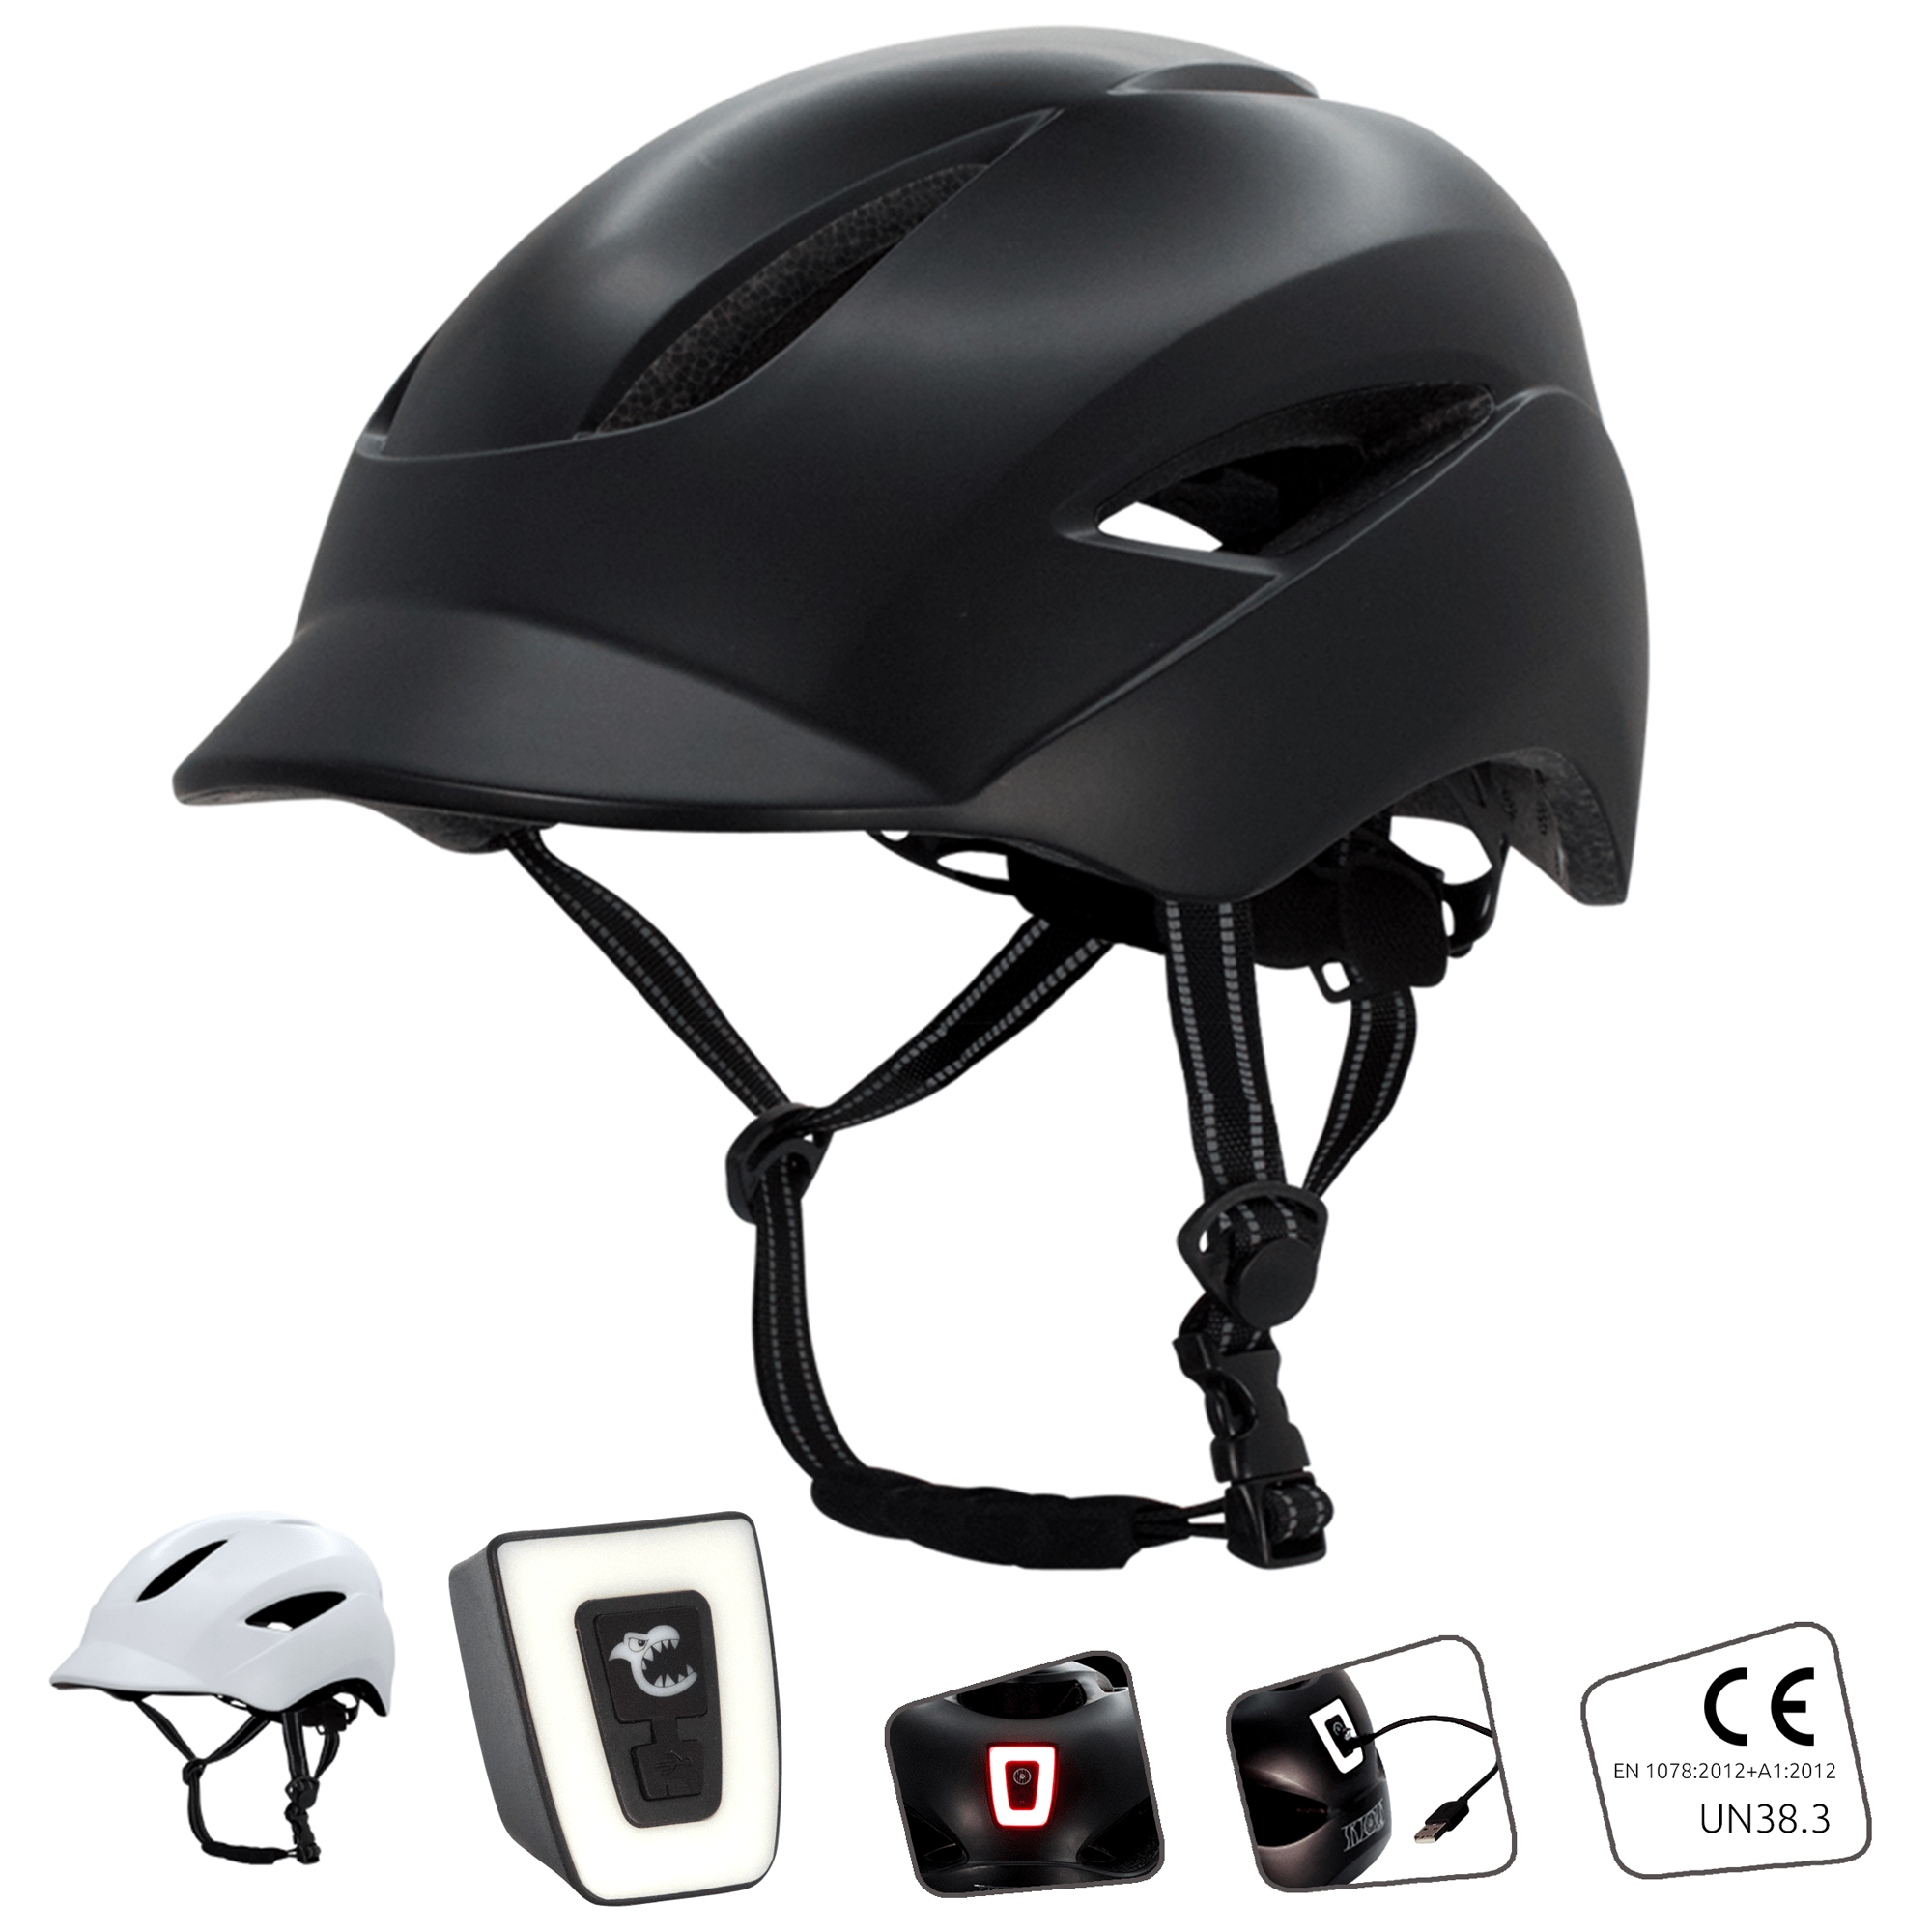 Aero bike helmets for adults